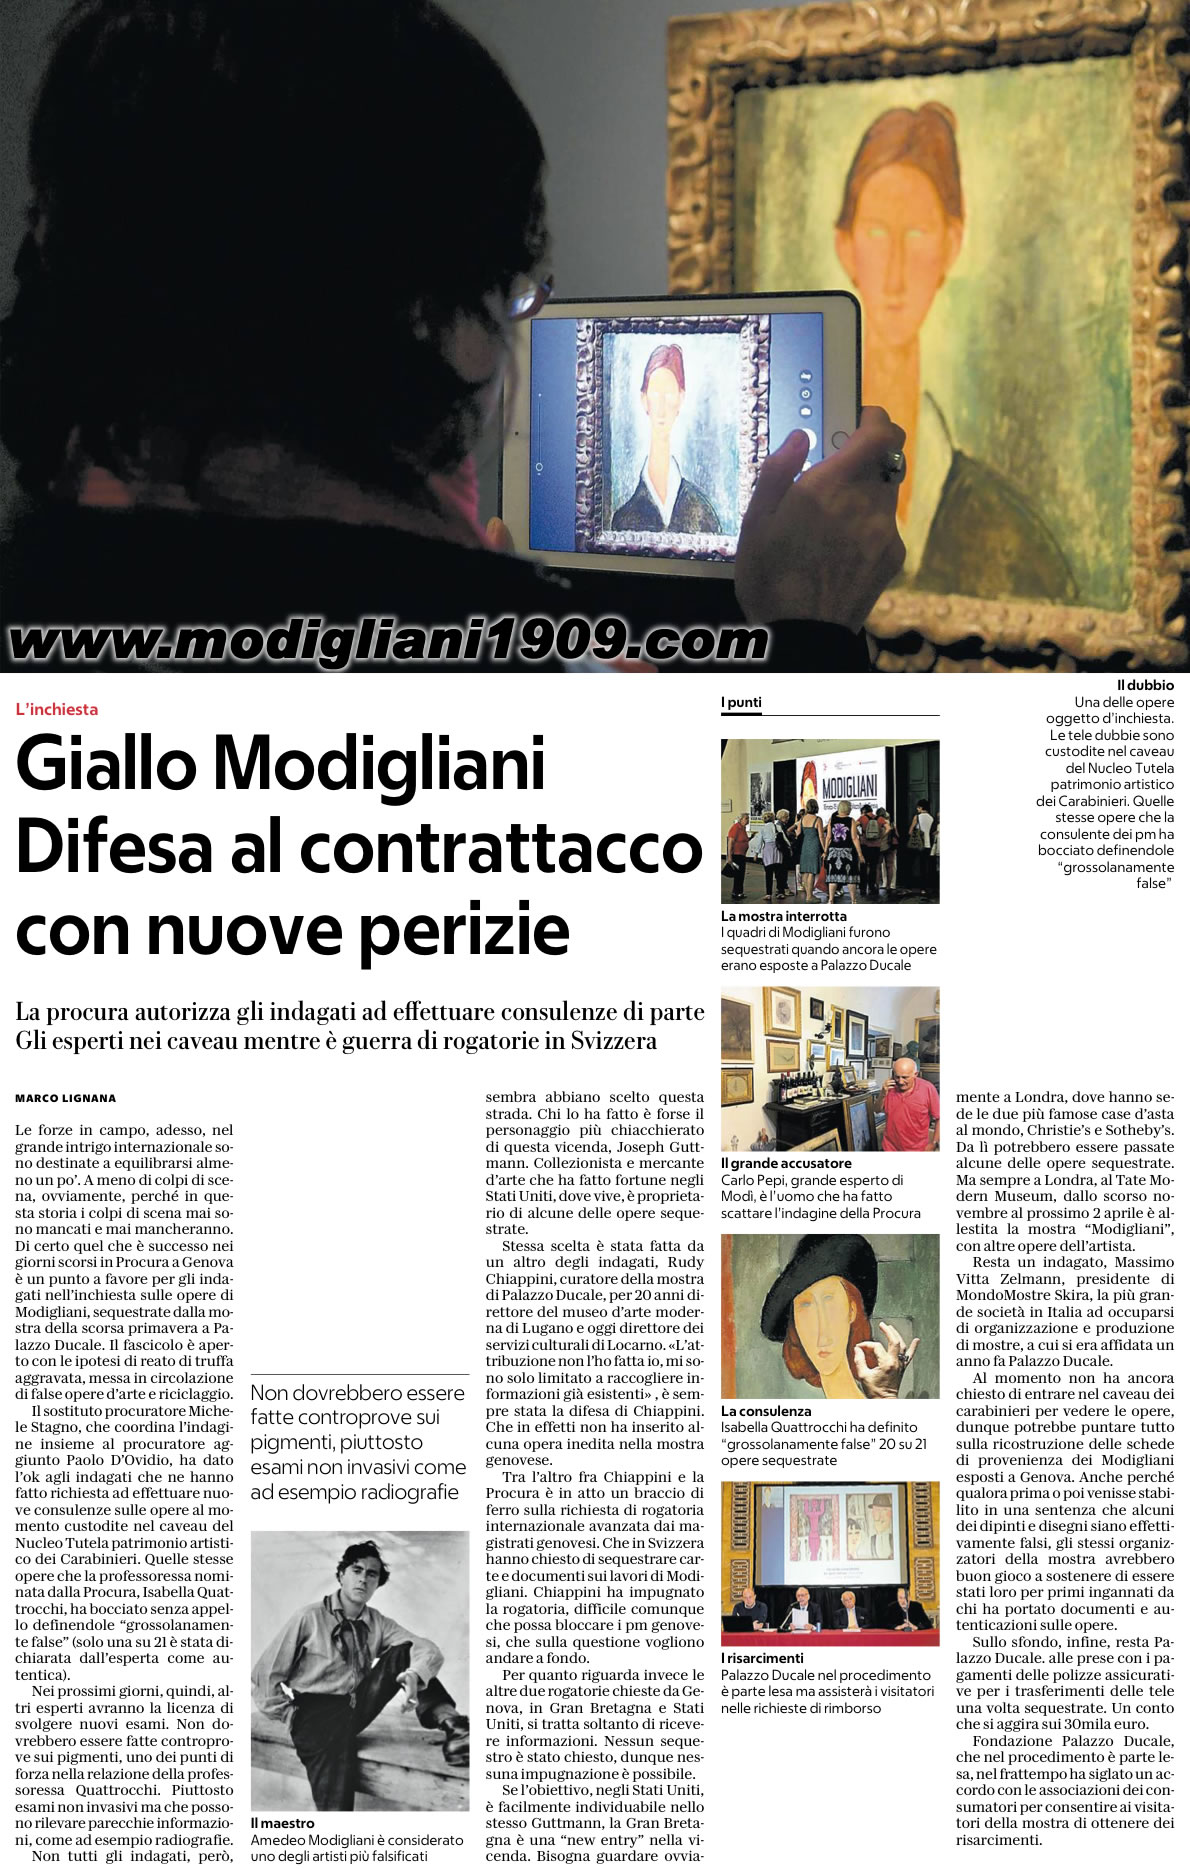 Giallo Modigliani - Difesa al contrattacco con nuove perizie